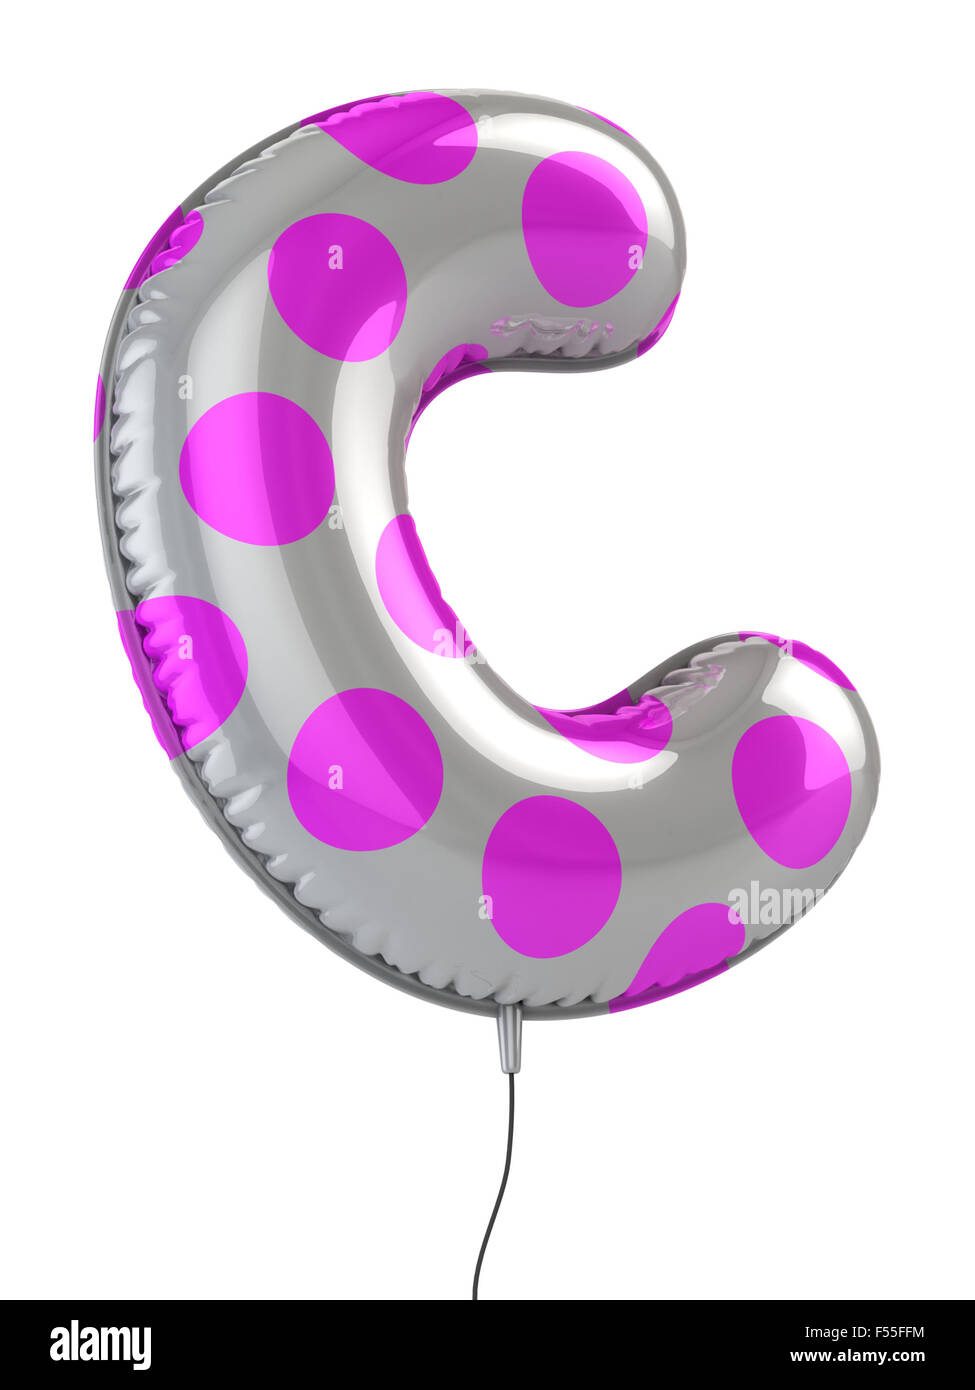 letter c balloon 3d illustration Stock Photo